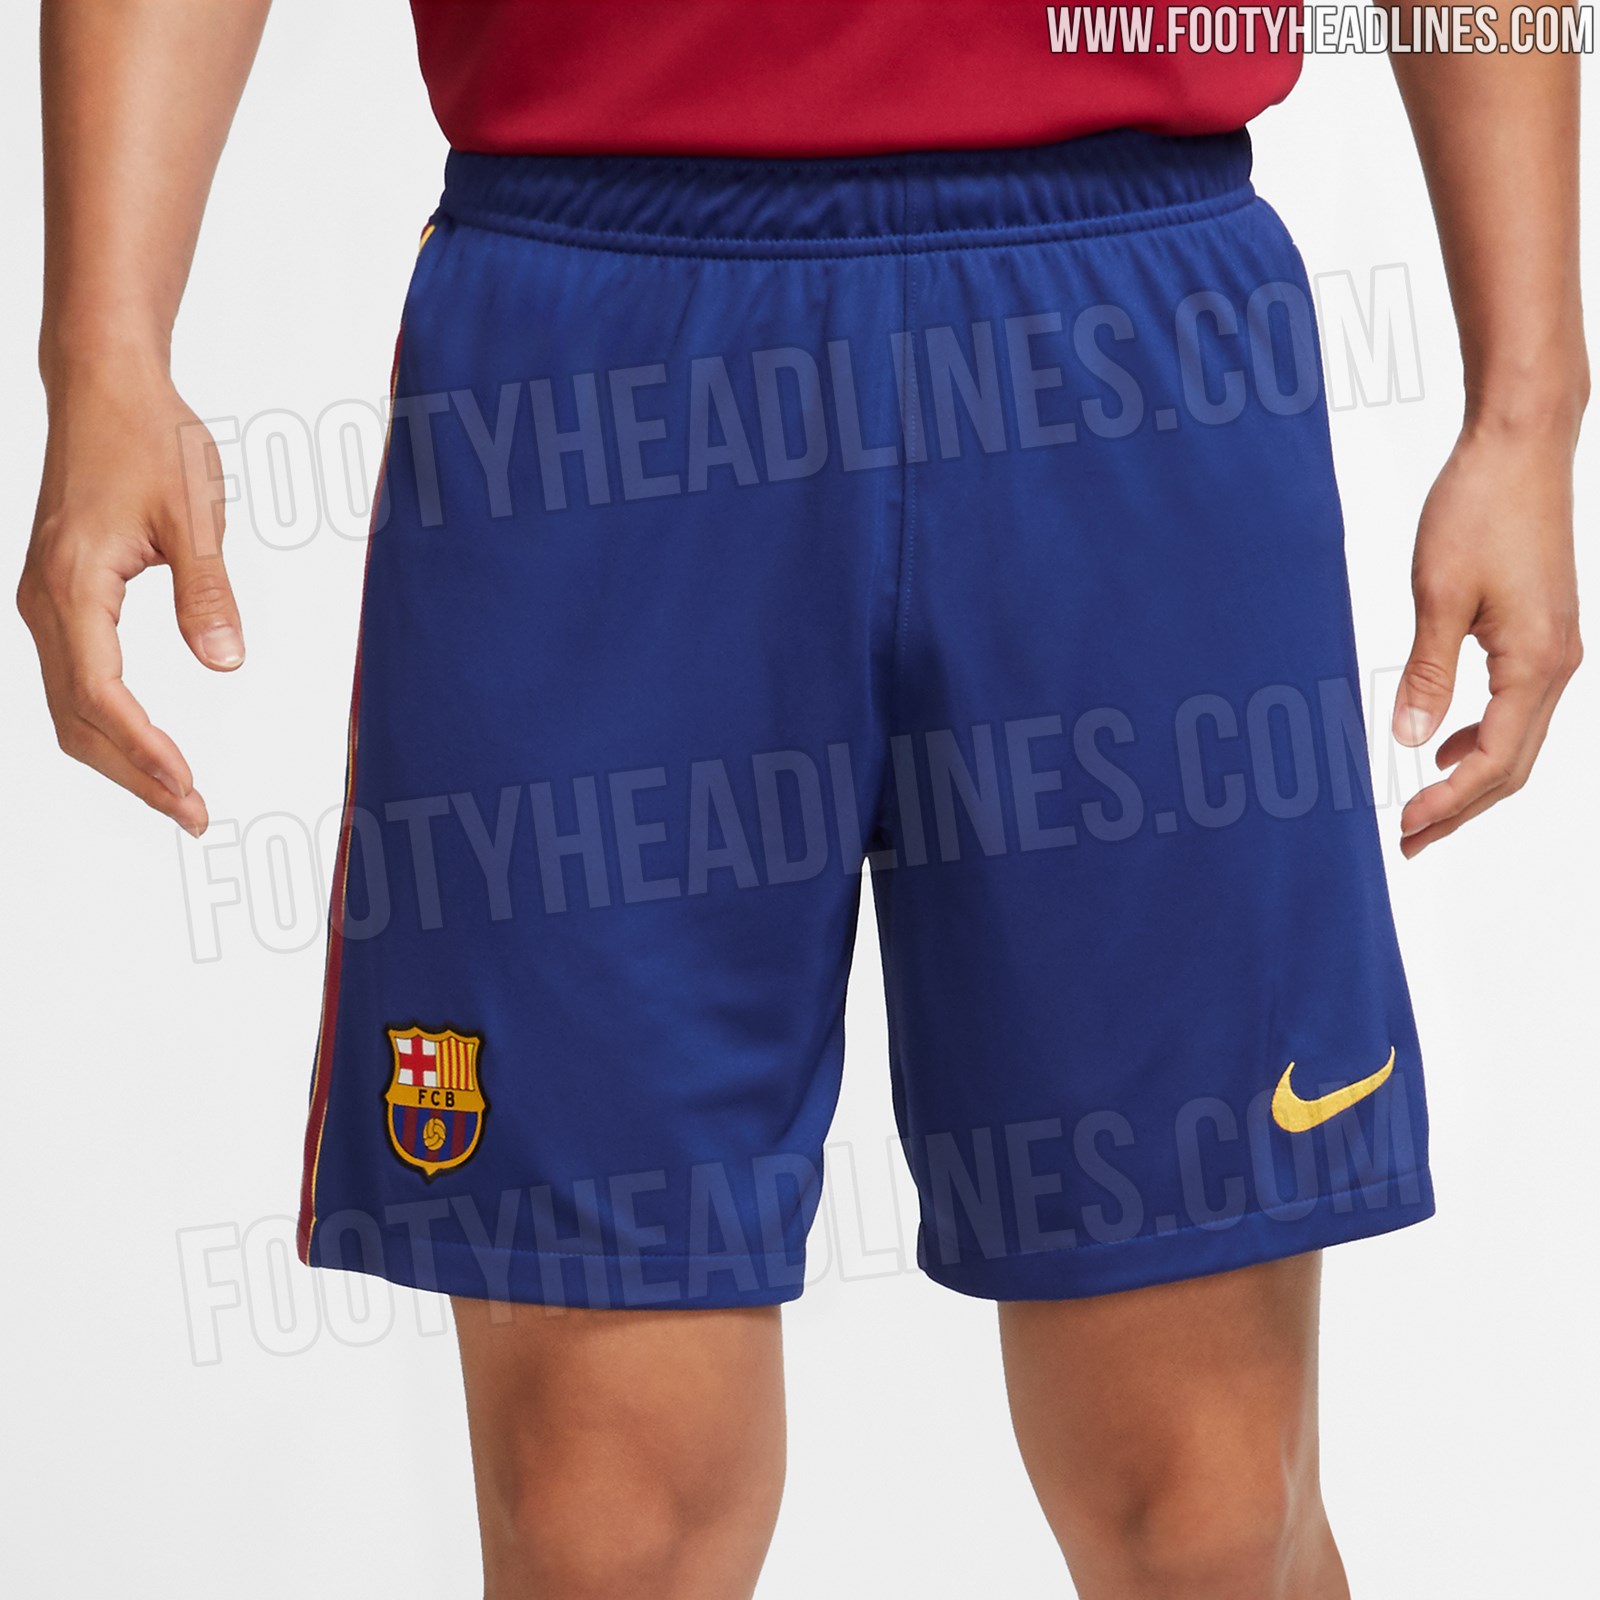 FC Barcelona 20-21 Home Kit Leaked - Vapor Match + Shorts + Socks ...